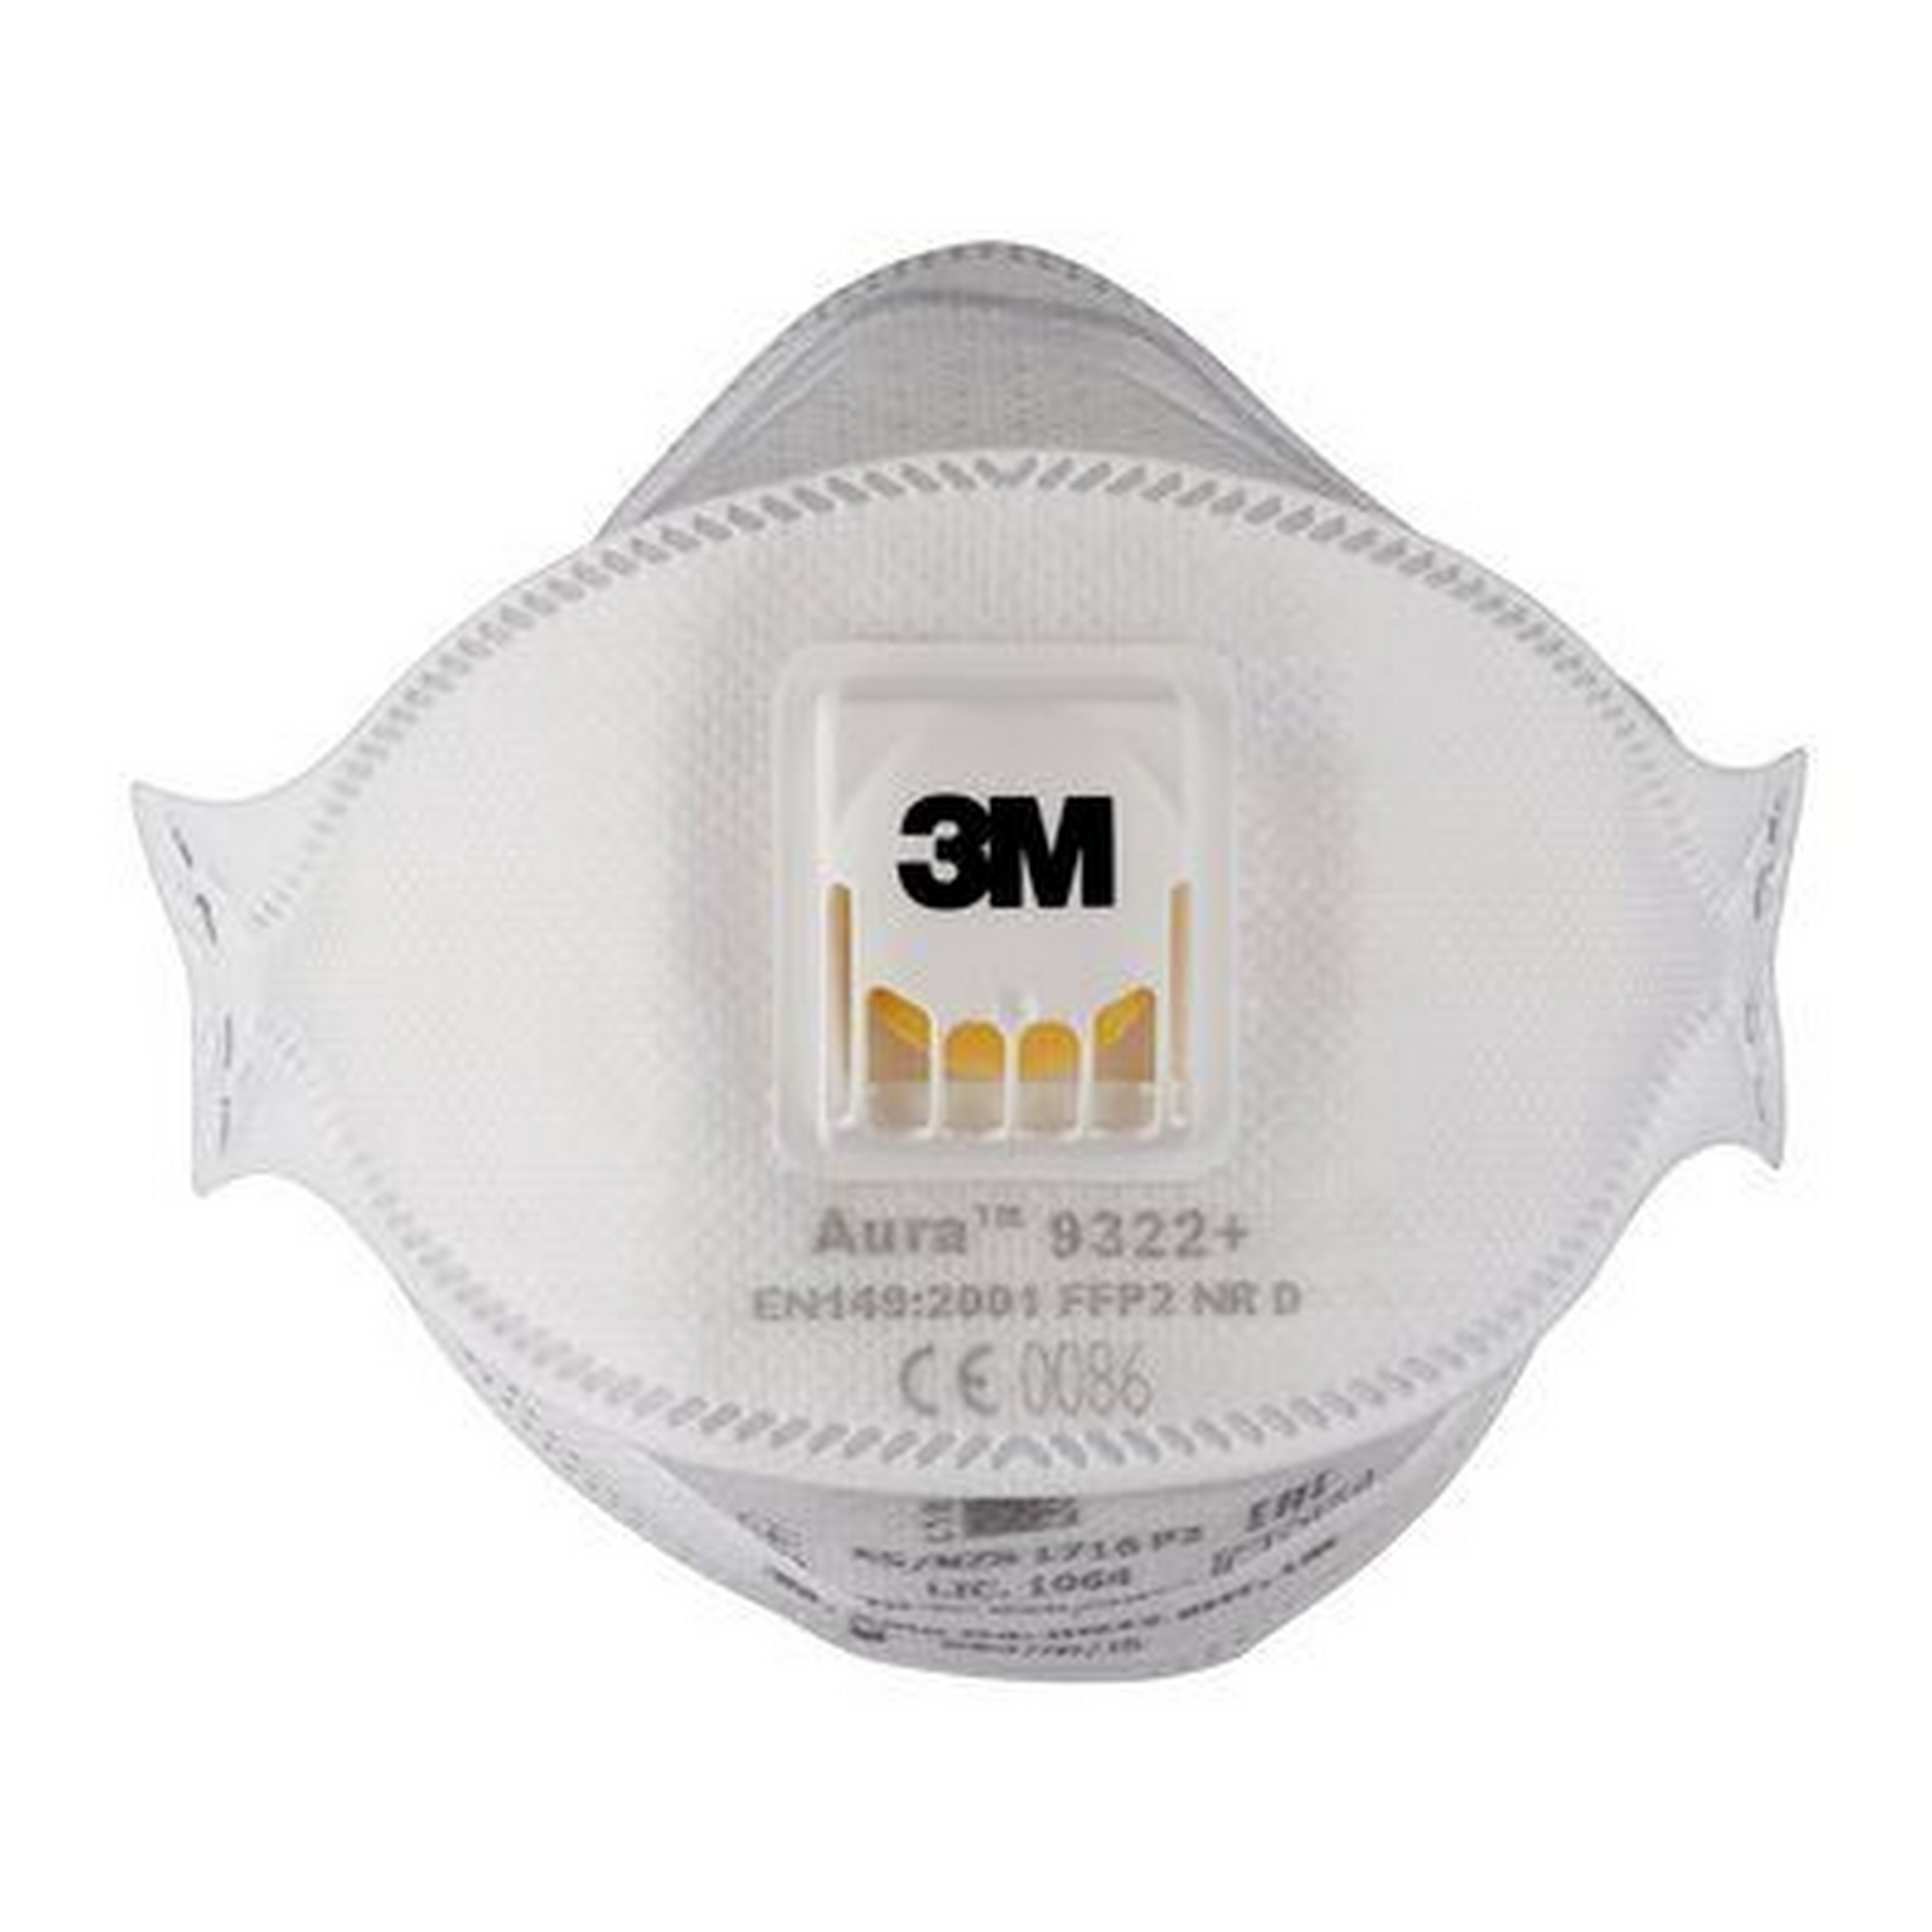 FFP2-Atemschutzmaske '9322+' mit Ventil, 10 Stück + product picture